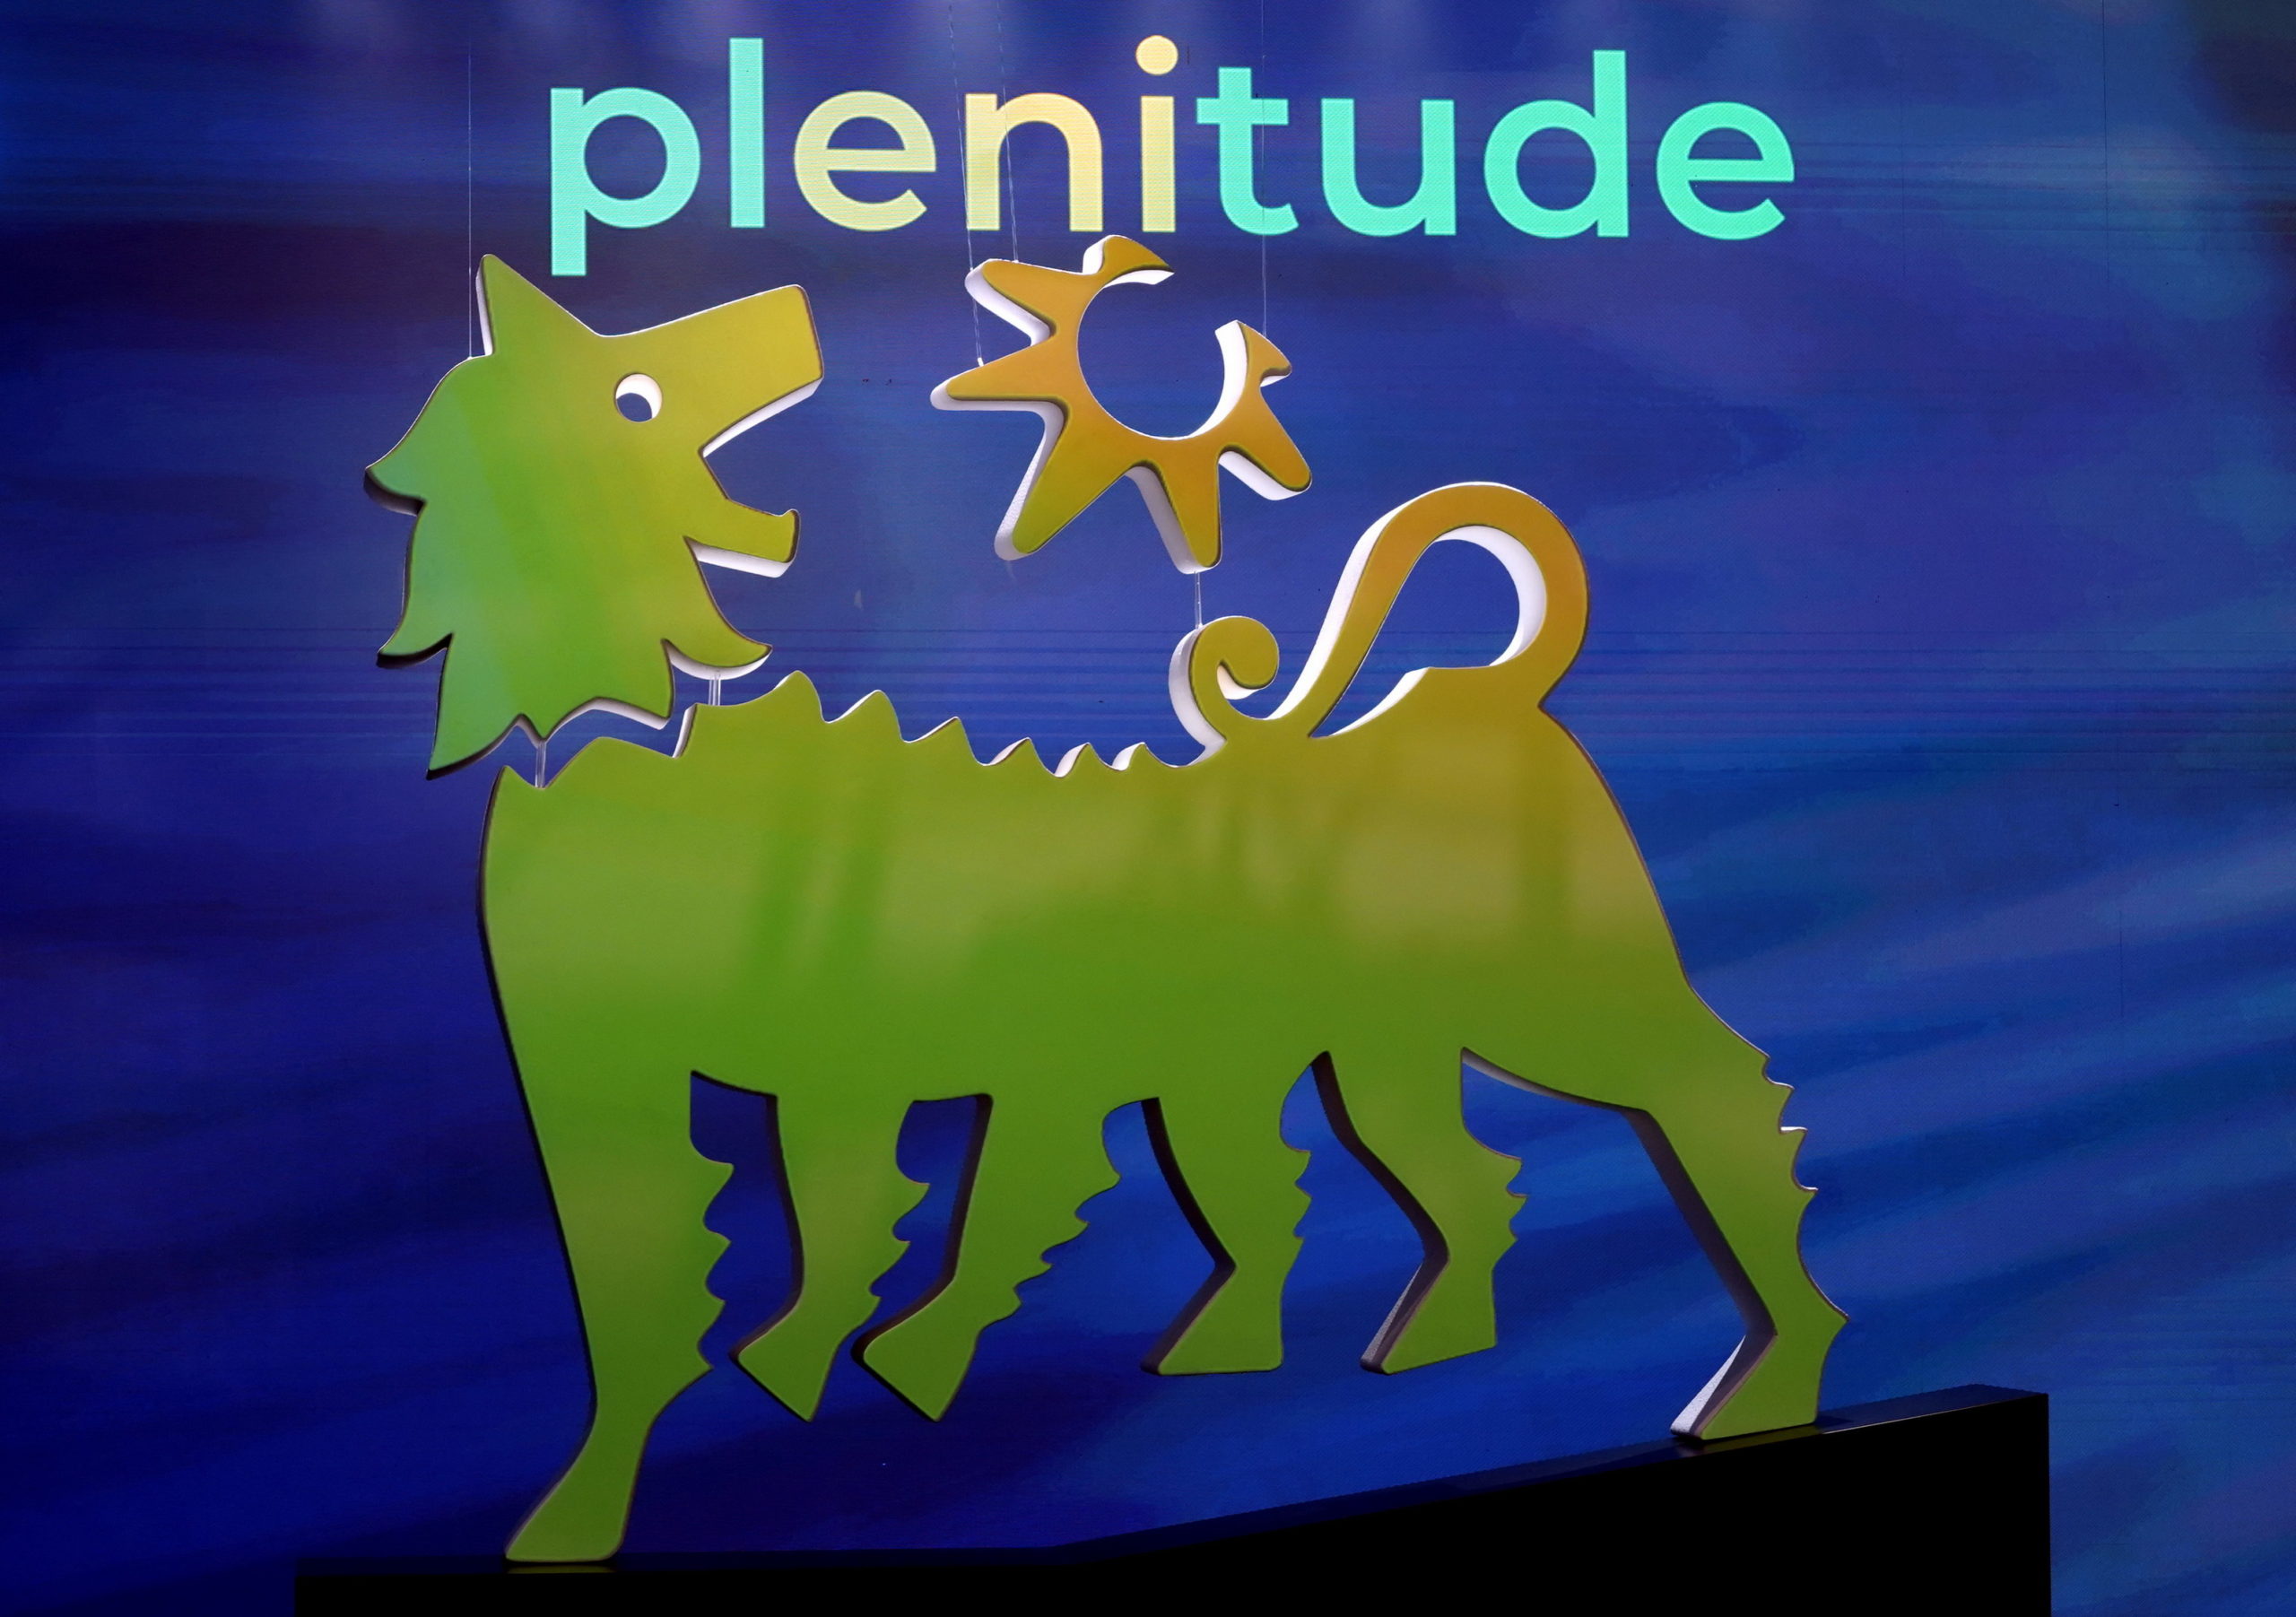 Plenitude (Eni), la joint venture GreenIT sigla intesa con Galileo per 8 progetti fotovoltaici in Italia